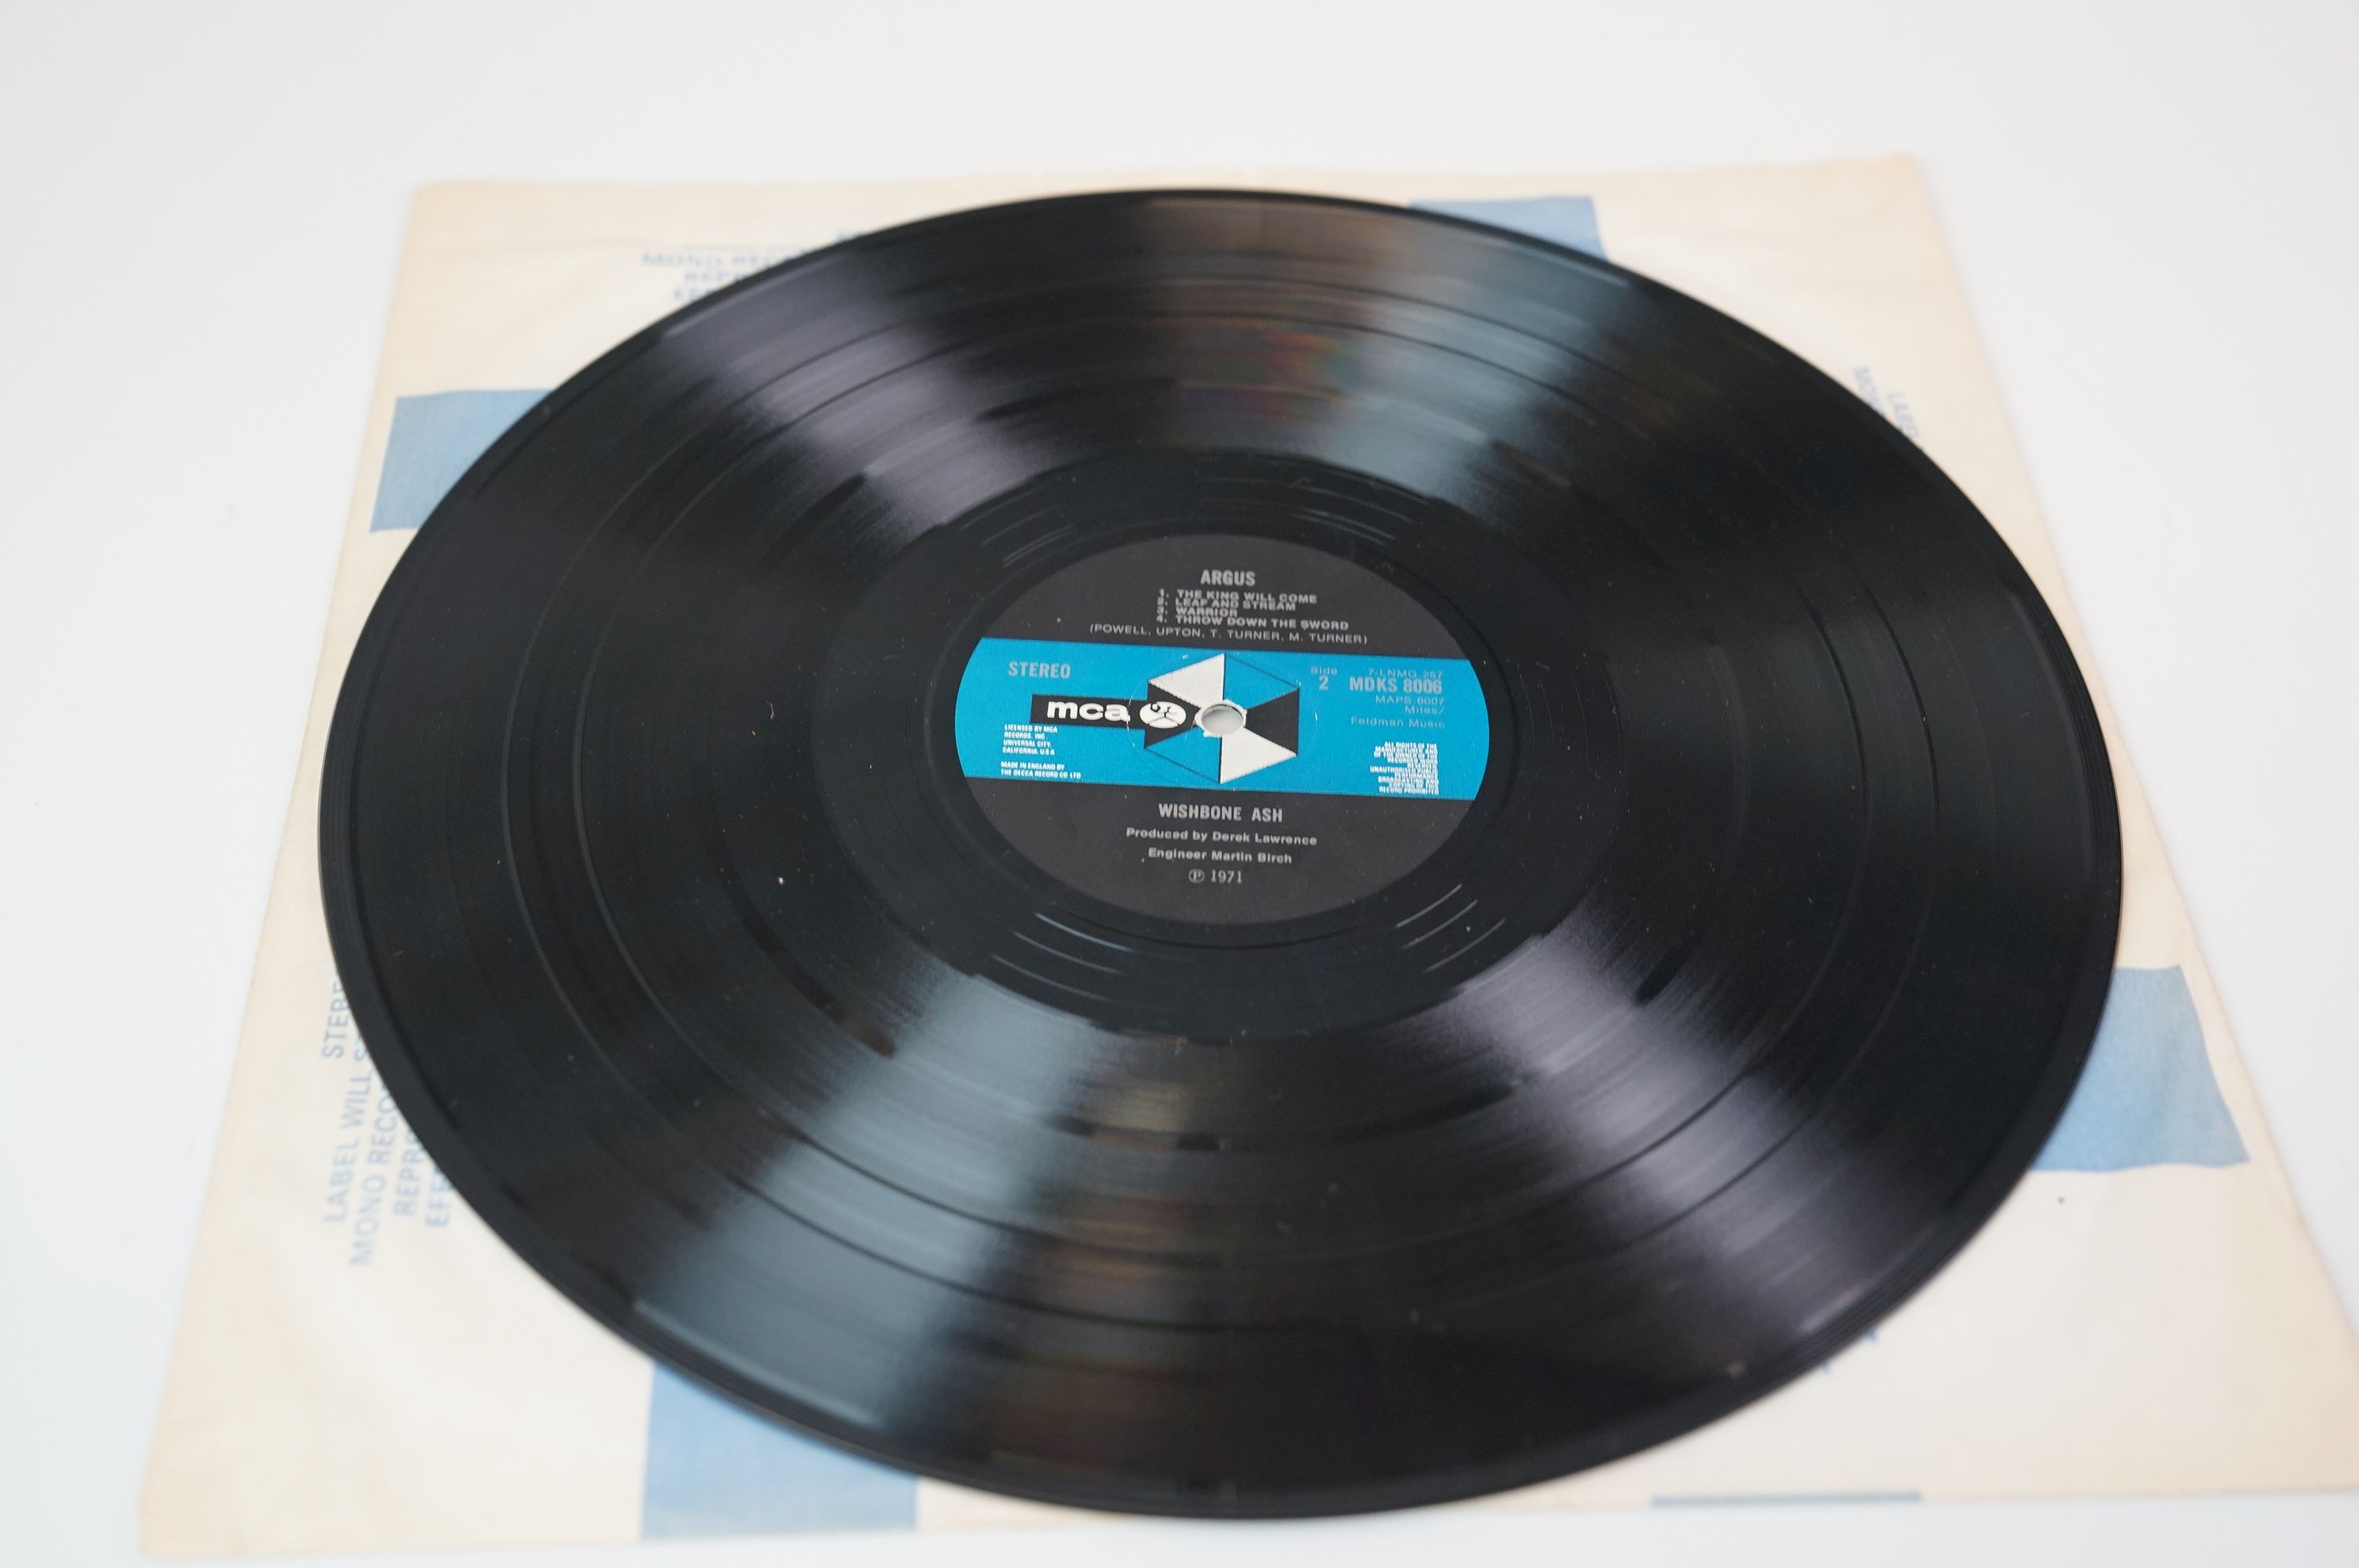 Vinyl - Wishbone Ash Argus on MCA MDKS 8006 vinyl & sleeves vg+ - Image 5 of 8